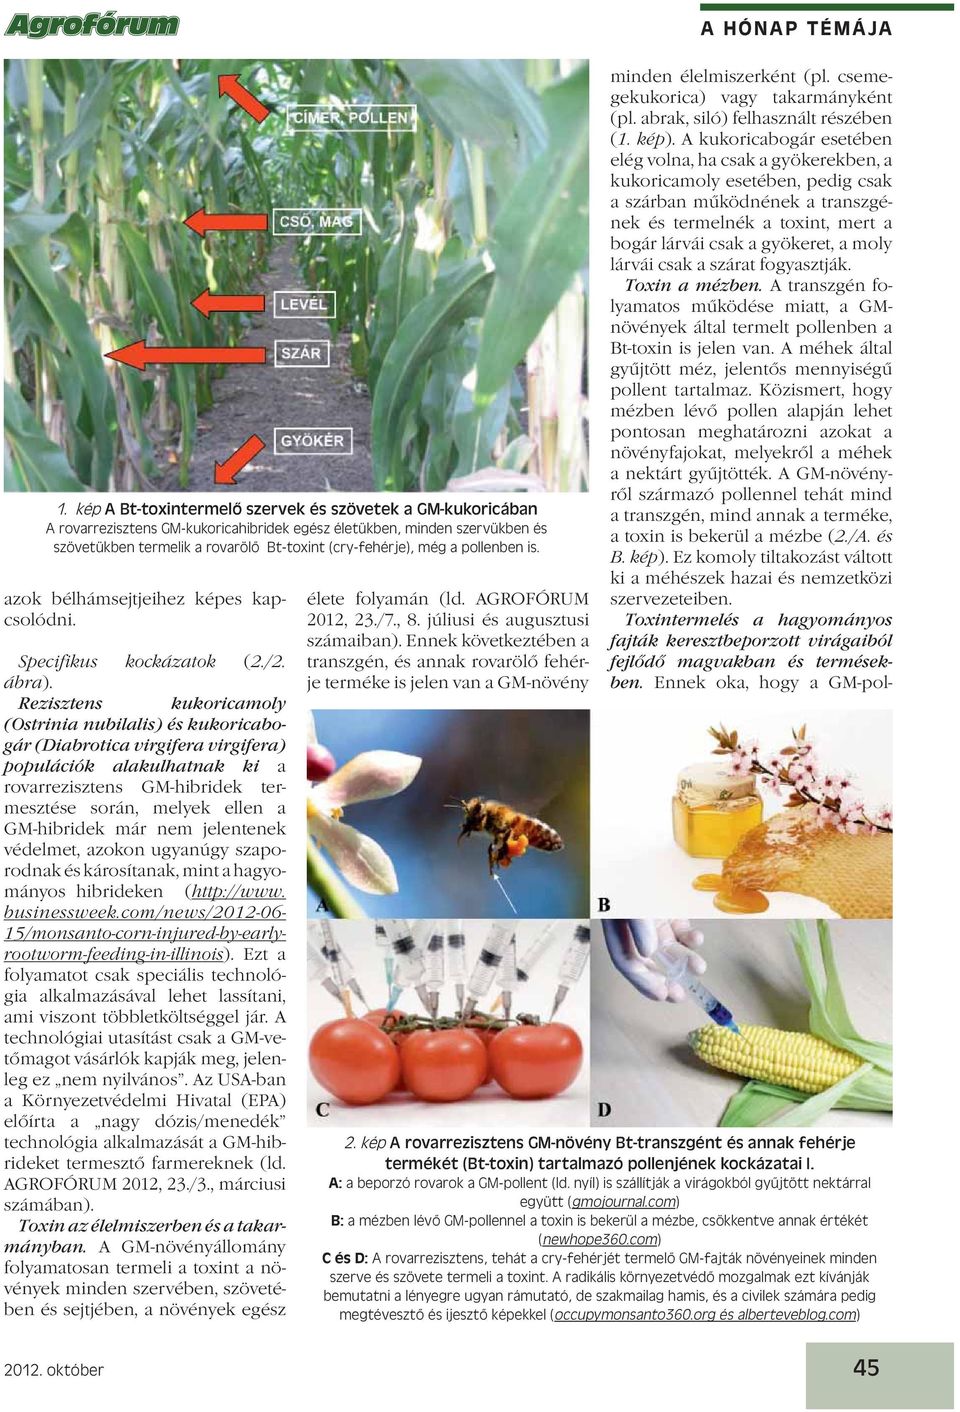 Rezisztens kukoricamoly (Ostrinia nubilalis) és kukoricabogár (Diabrotica virgifera virgifera) populációk alakulhatnak ki a rovarrezisztens GM-hibridek termesztése során, melyek ellen a GM-hibridek